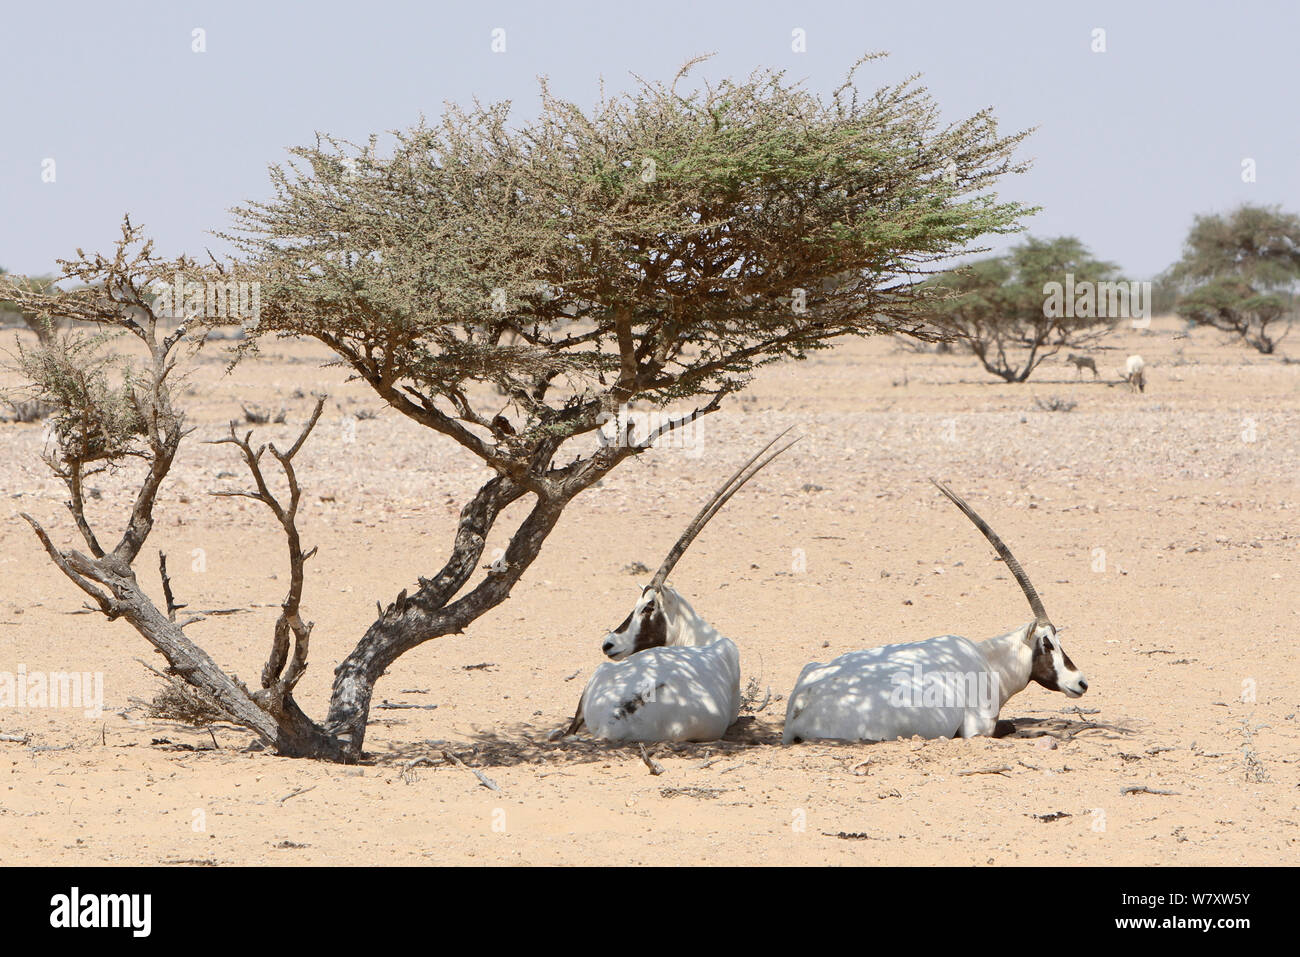 Oryx d'arabie (Oryx leucoryx) deux reposant sous l'Acacia, Oman, novembre. Pris dans les grande enceinte à l'intérieur de la zone protégée. Banque D'Images